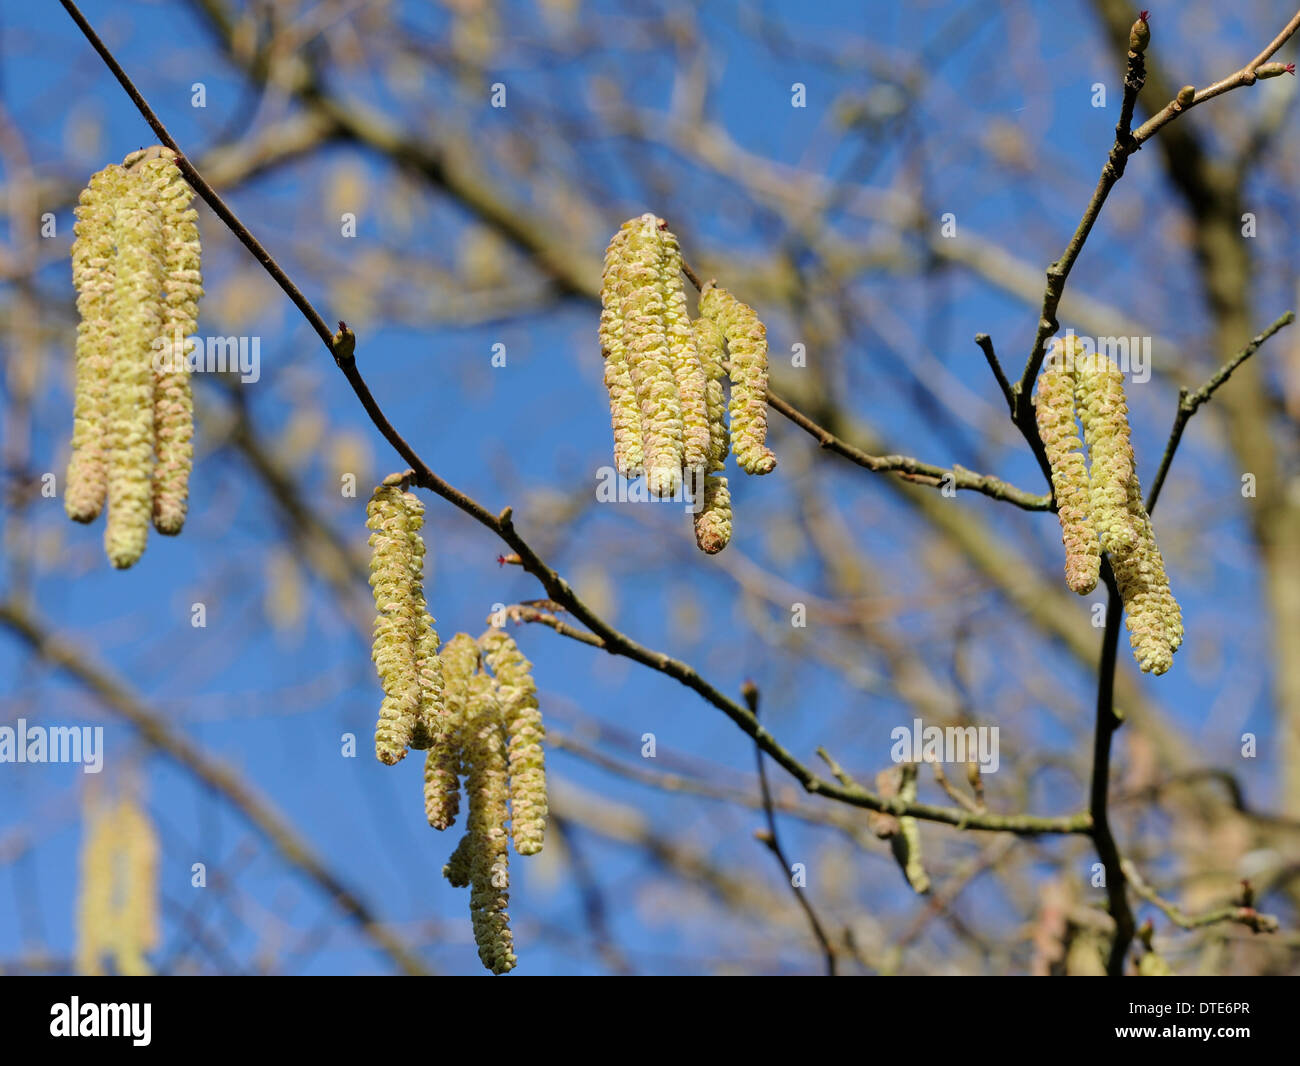 Kätzchen oder Lämmer Schwänzen, die männlichen Blüten von der gemeinsamen Hecke Baum Hasel (Corylus Avellana), zeigen, dass der Frühling nicht weit weg ist Stockfoto